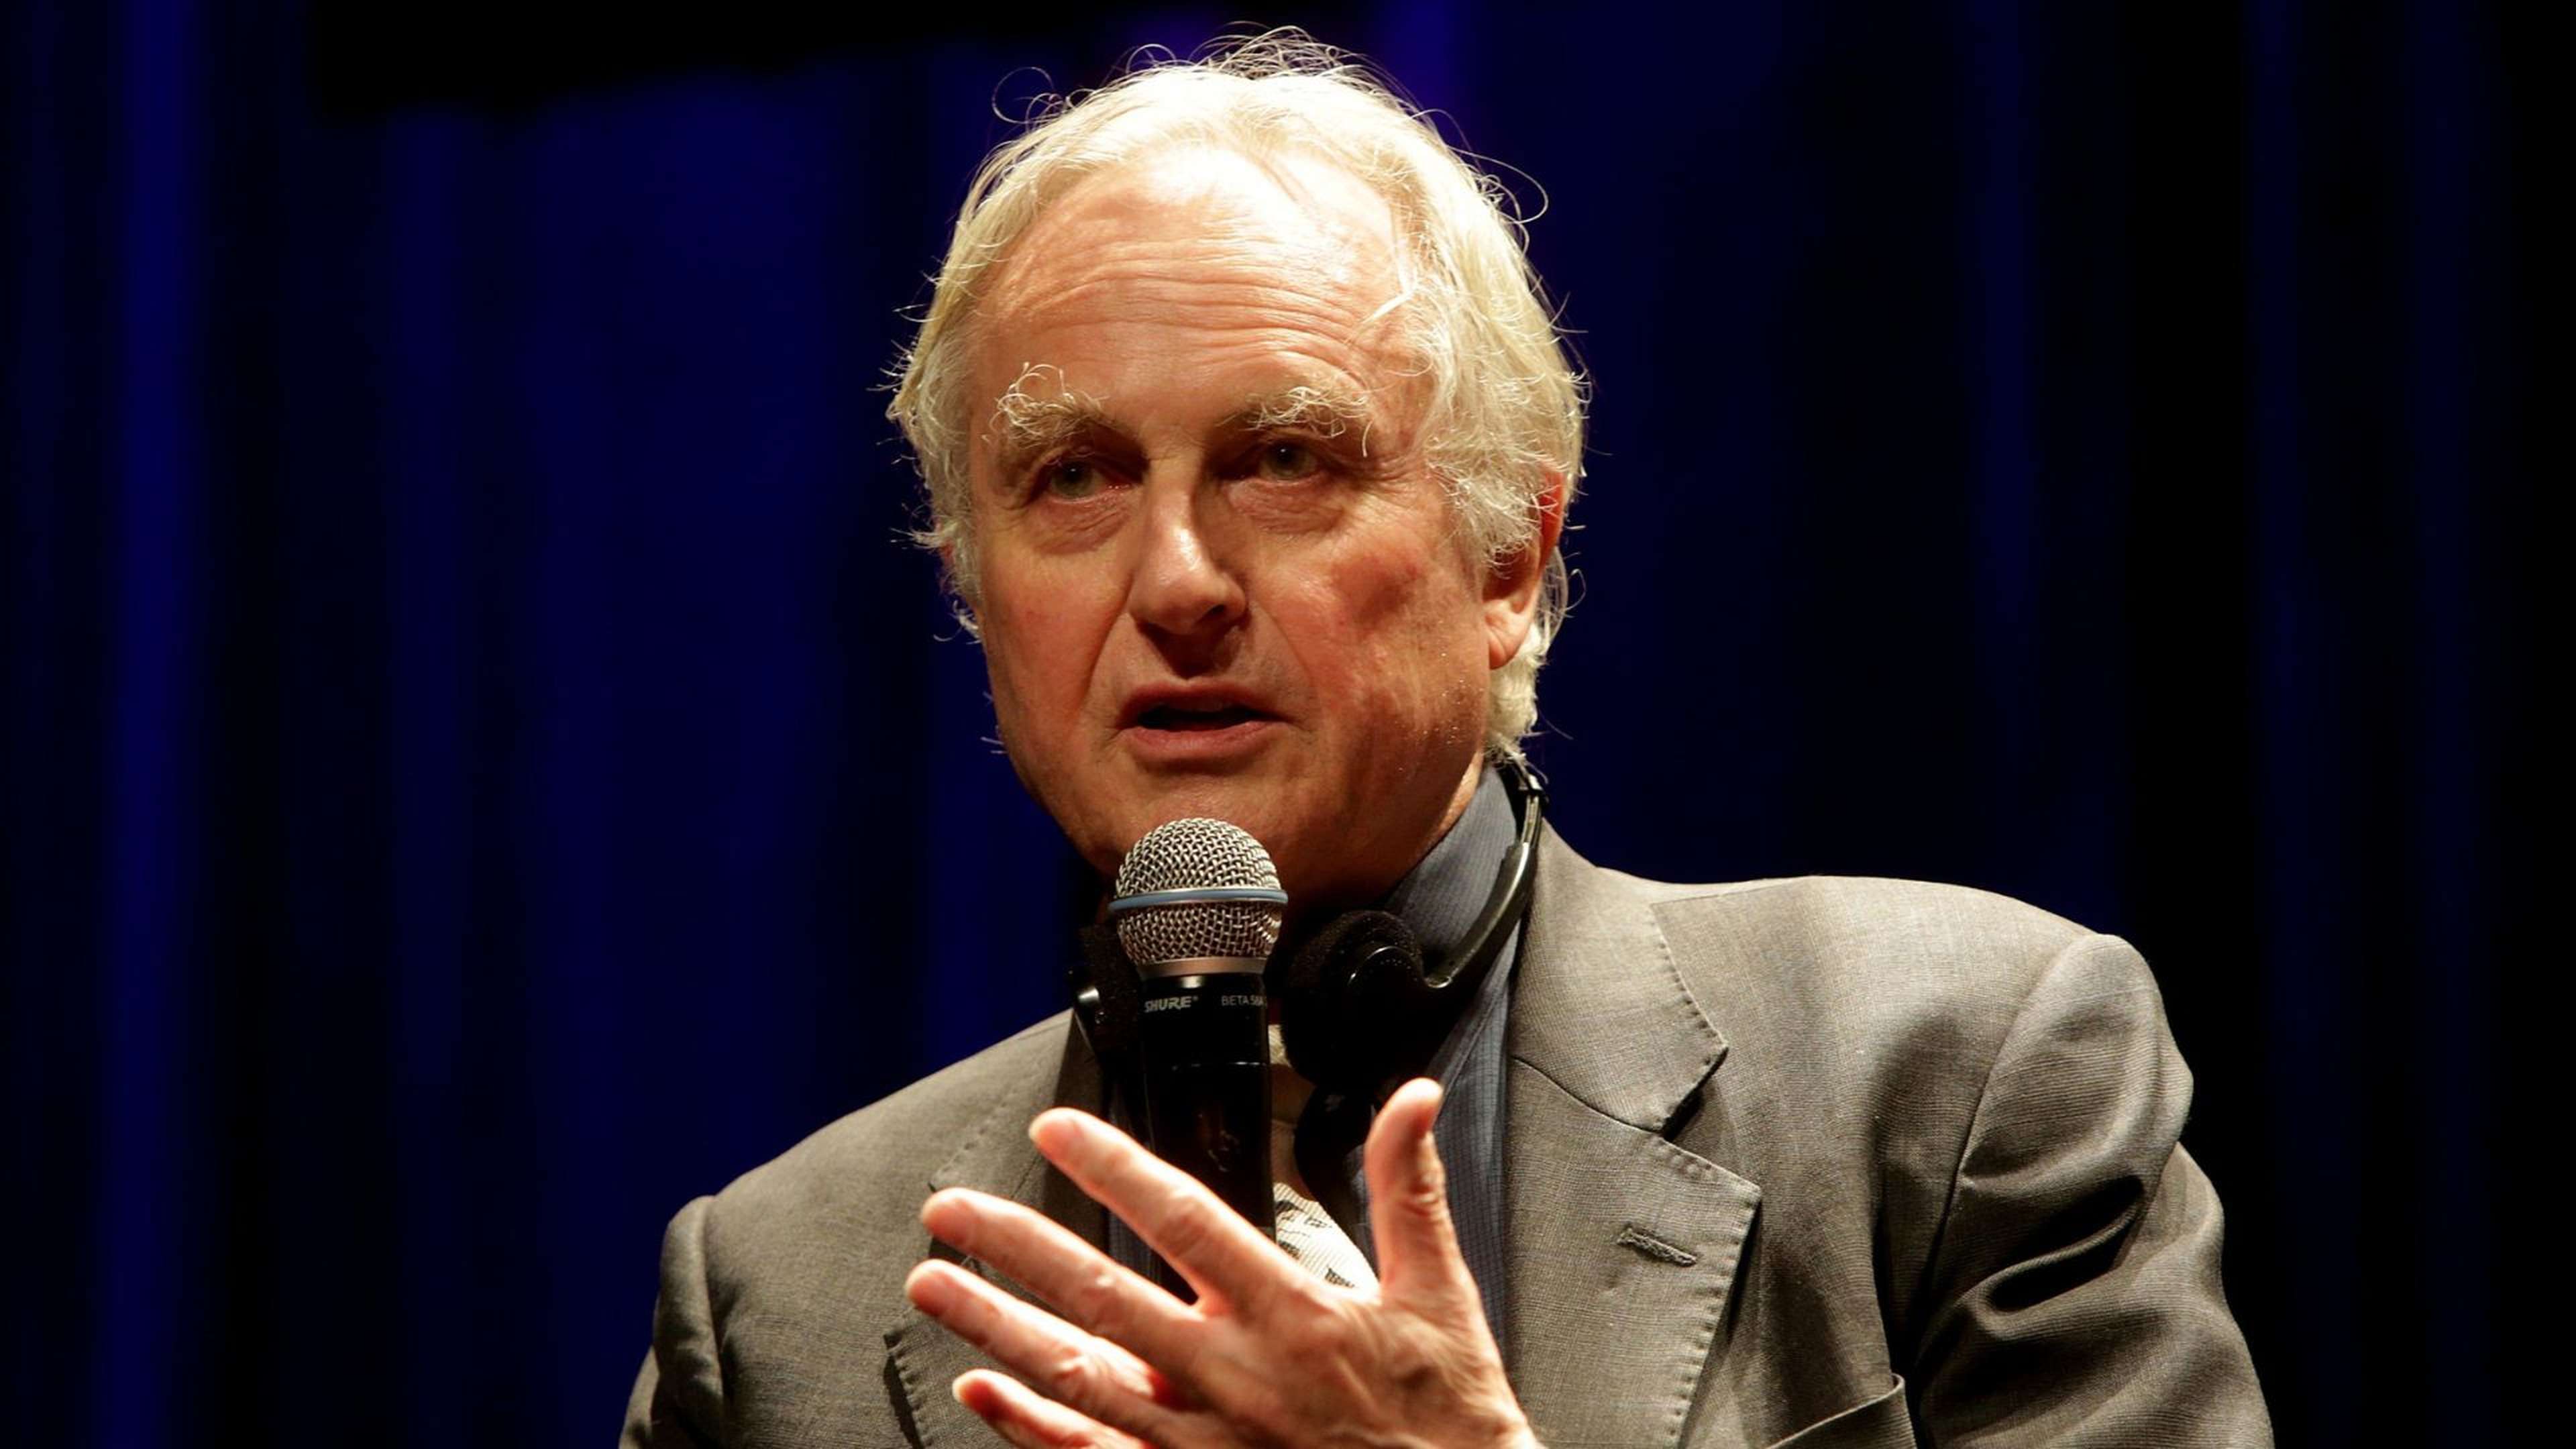 Que pensez-vous de Richard Dawkins et de son livre "Pour en finir avec Dieu" ? 